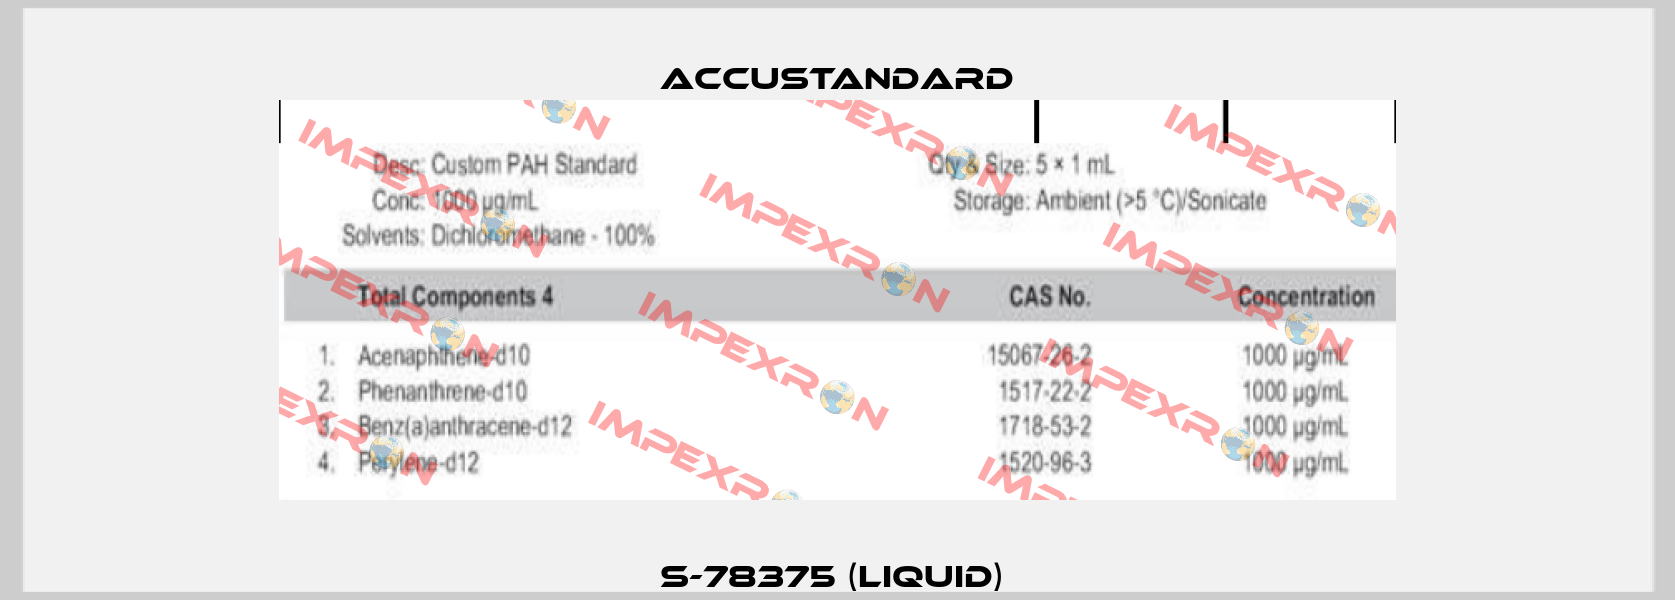 S-78375 (liquid)  AccuStandard